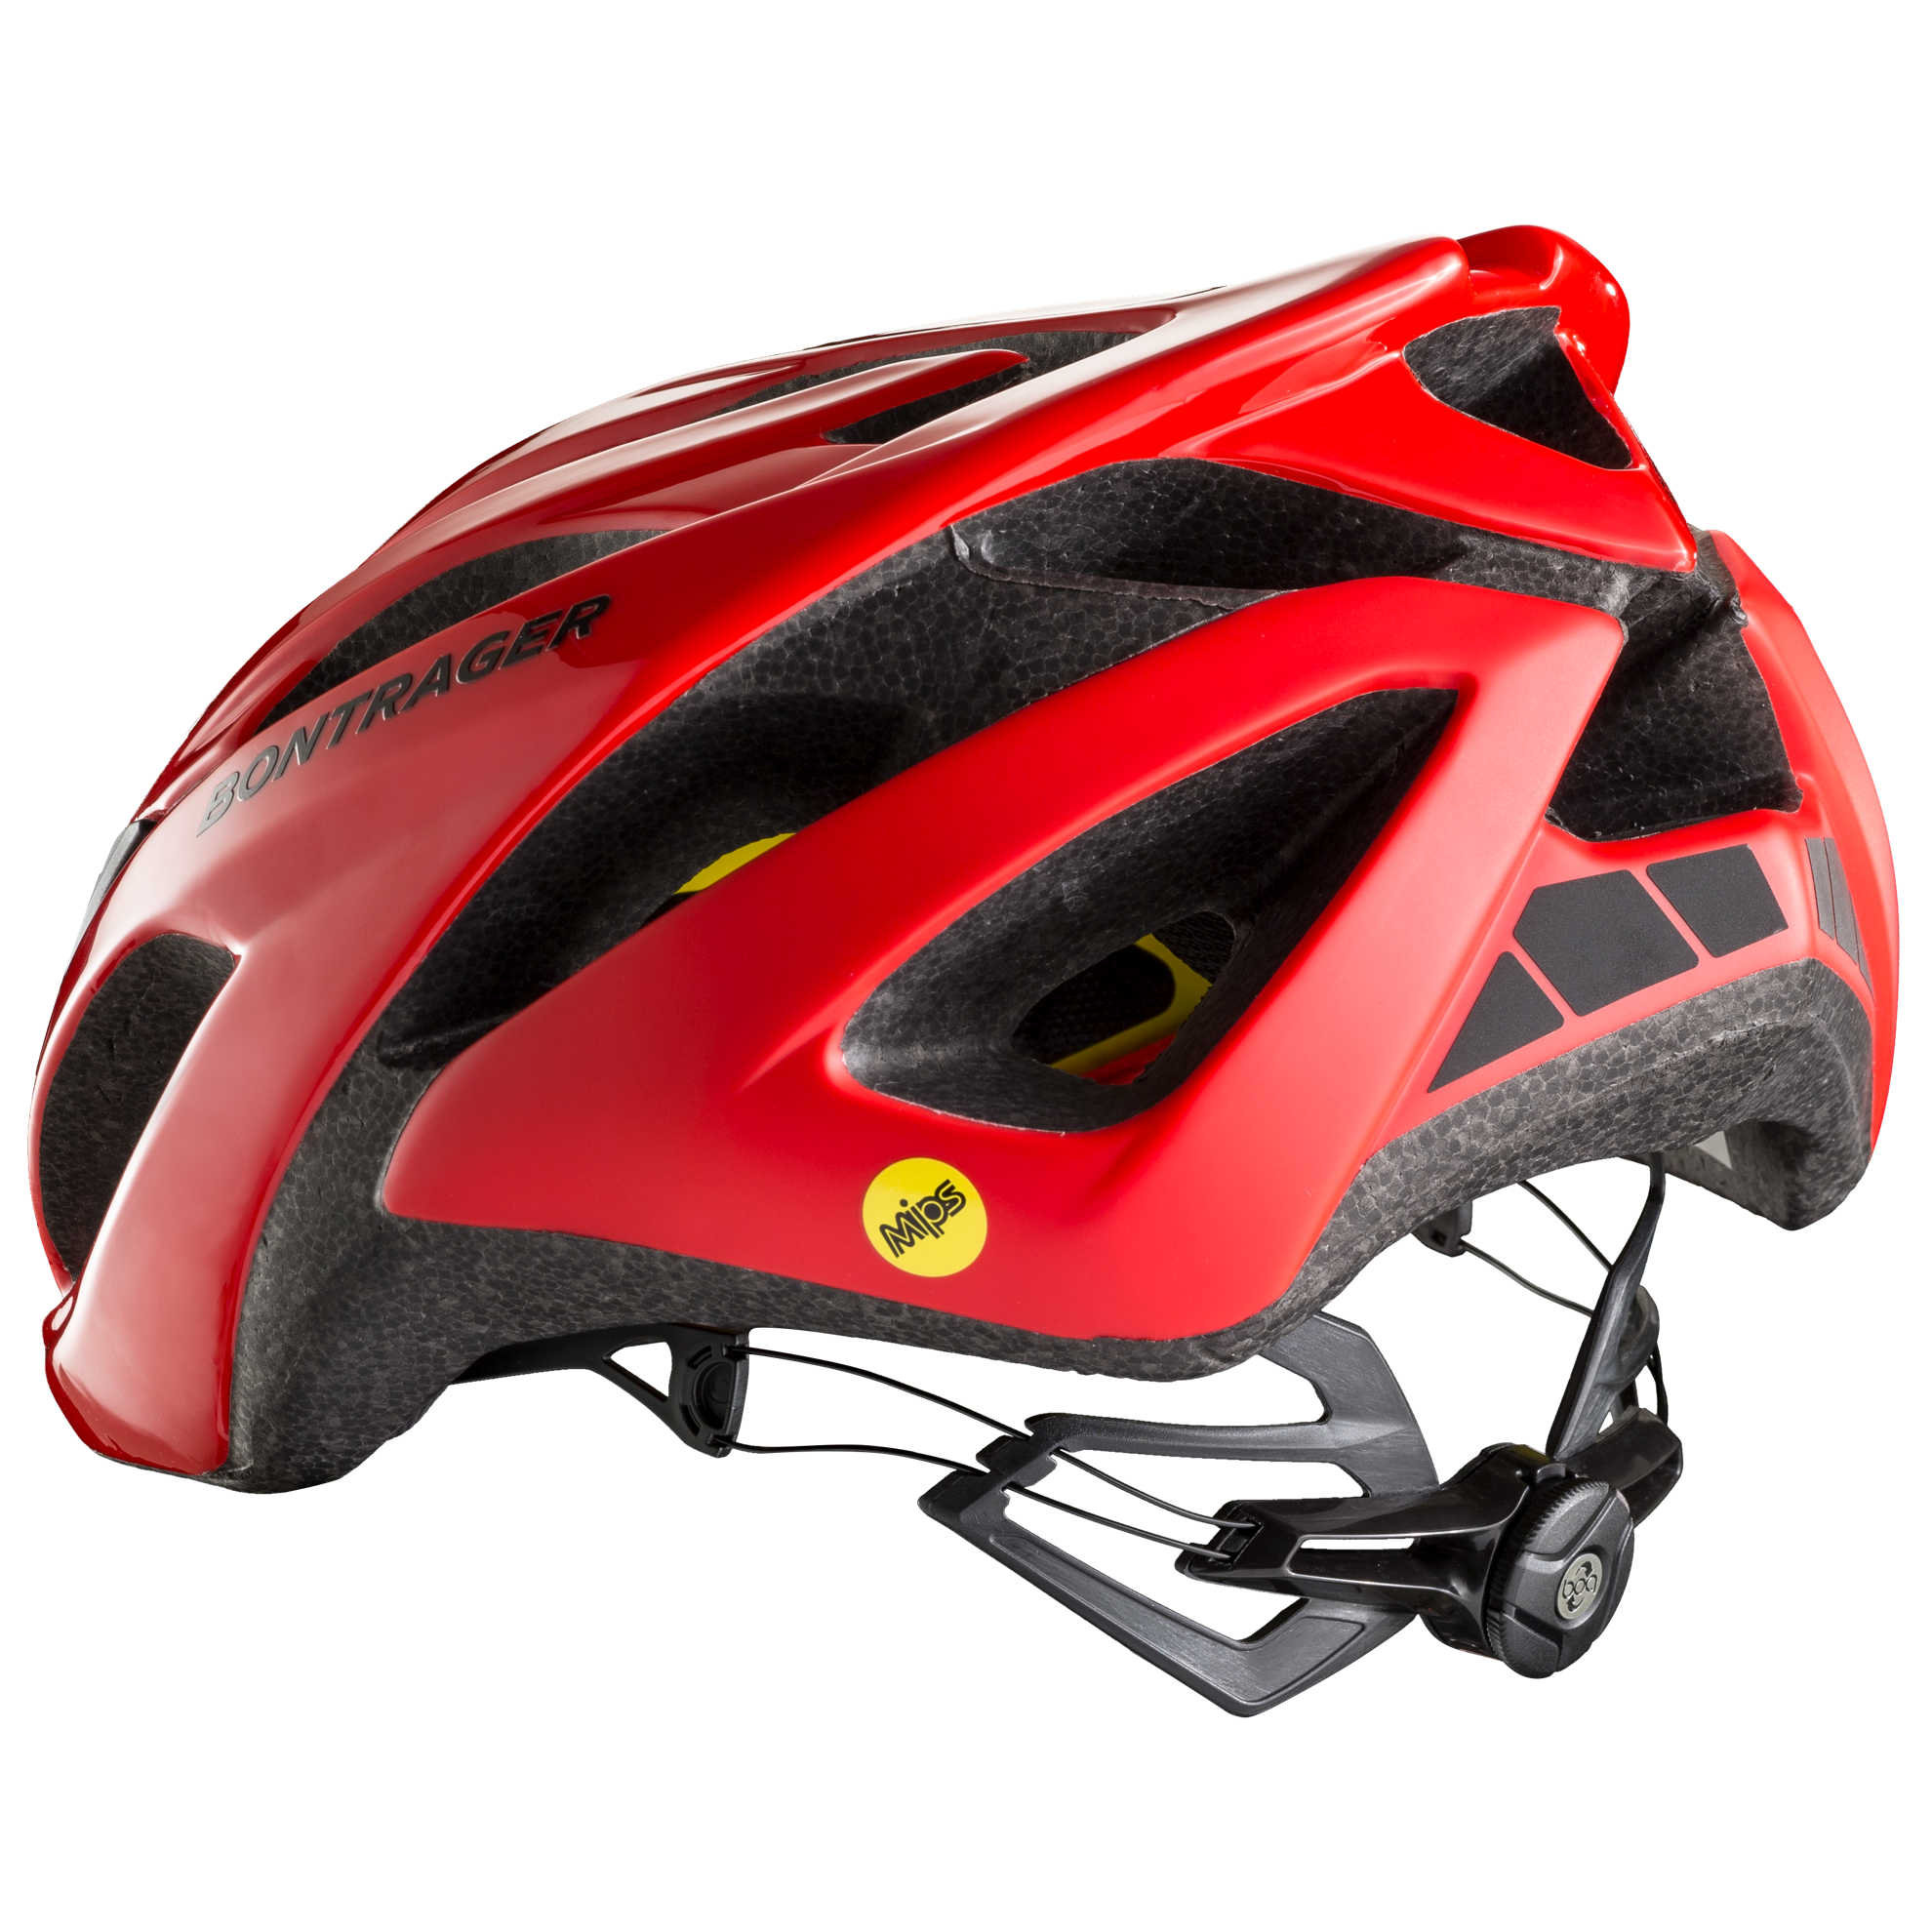 starvos mips road bike helmet